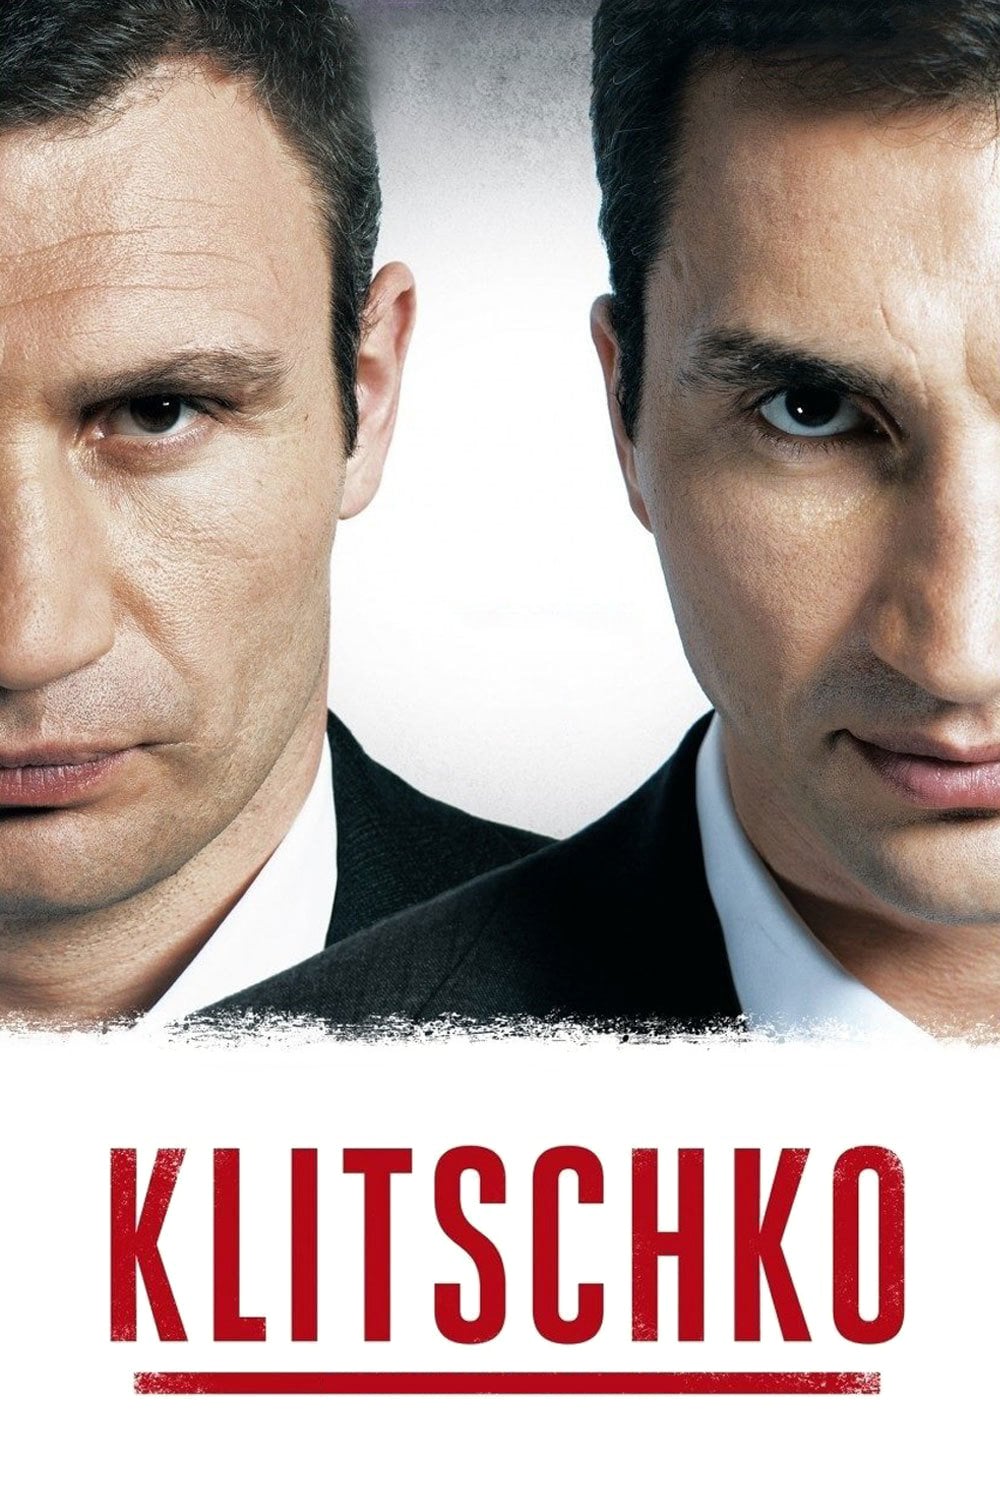 Plakat von "Klitschko"